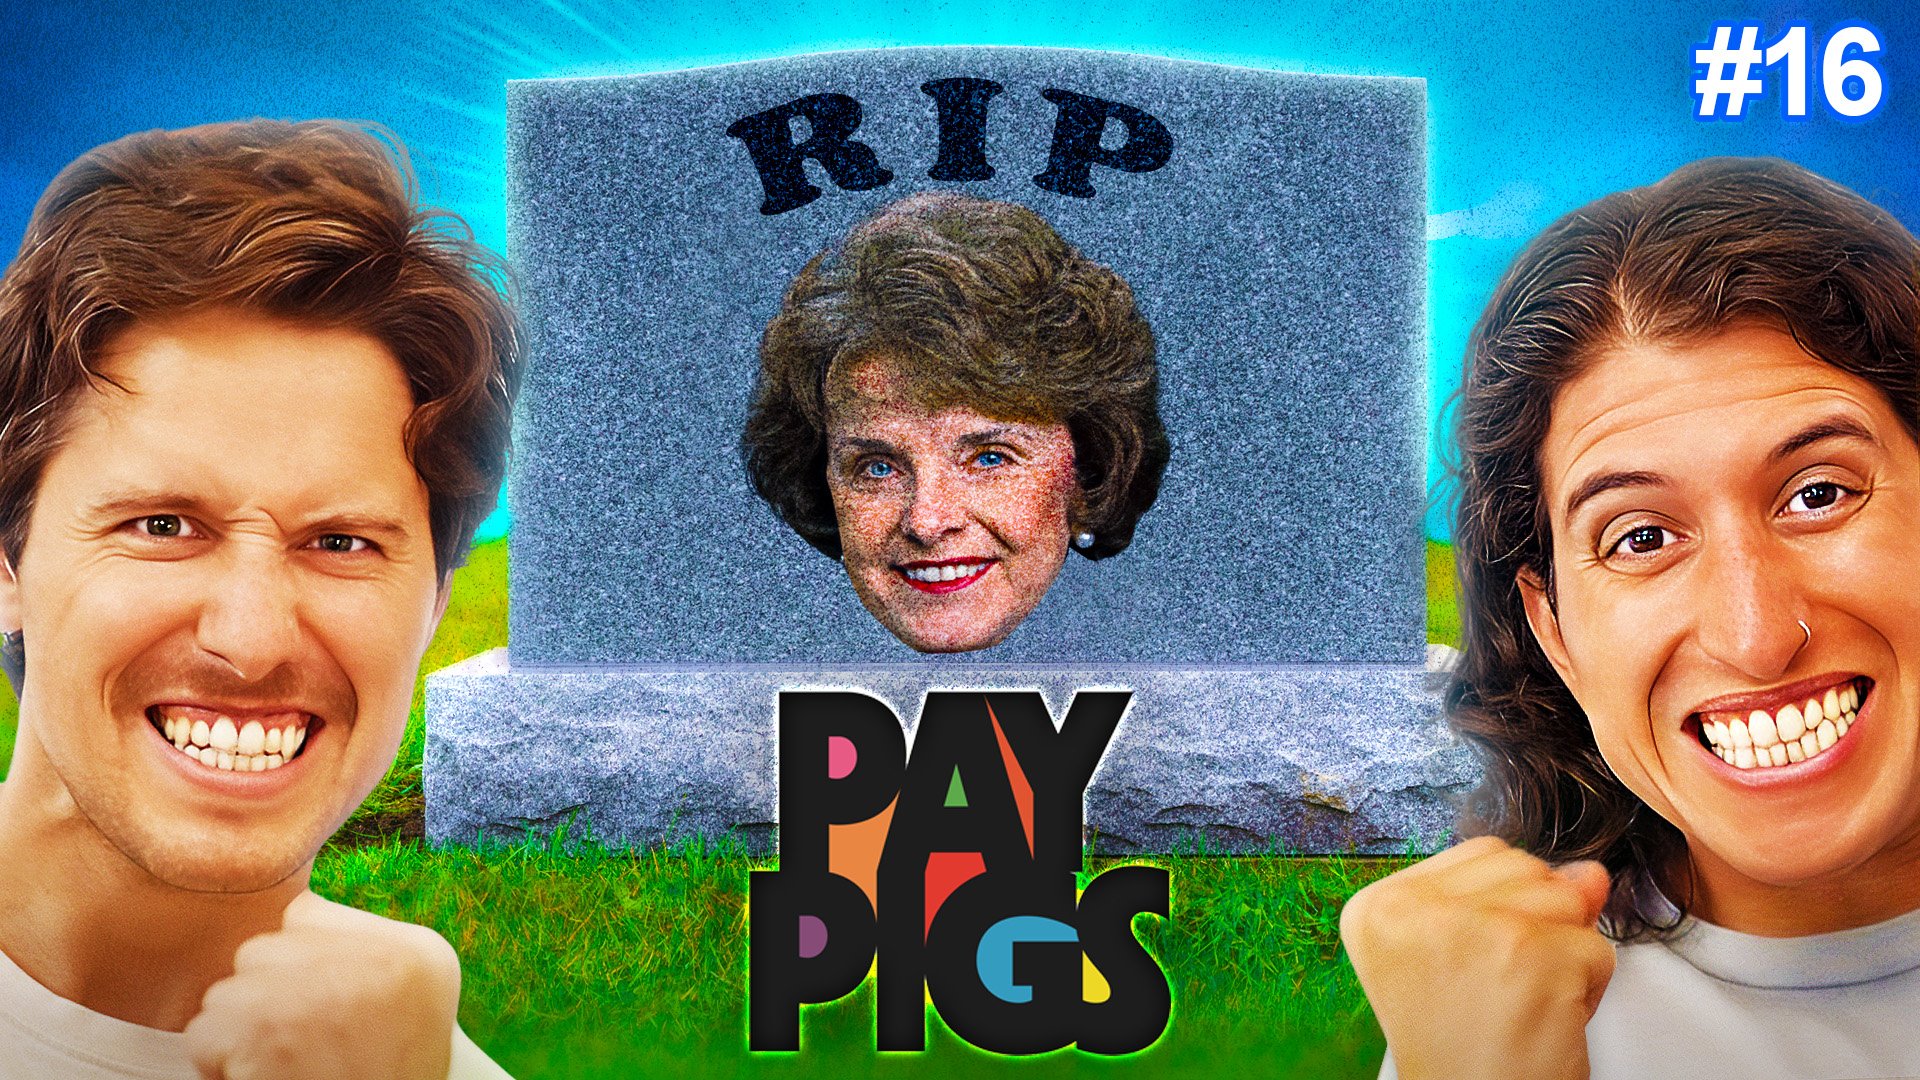 pay pigs thumbnail - ep 16 v7.jpg